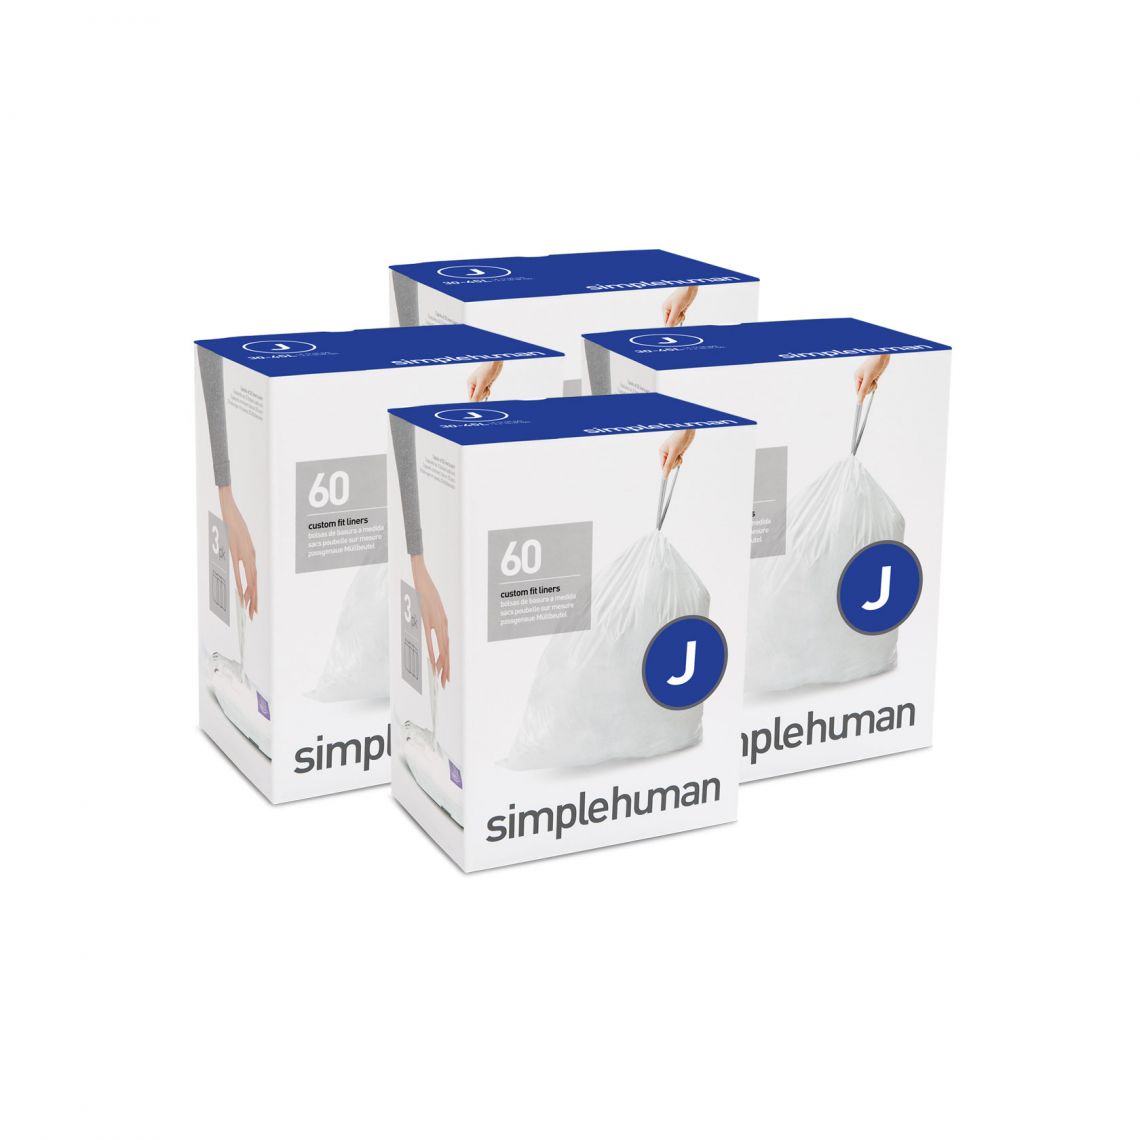 מארז 4 חבילות שקיות אשפה (J) דגם Simplehuman - CW0259 - סימפליומן